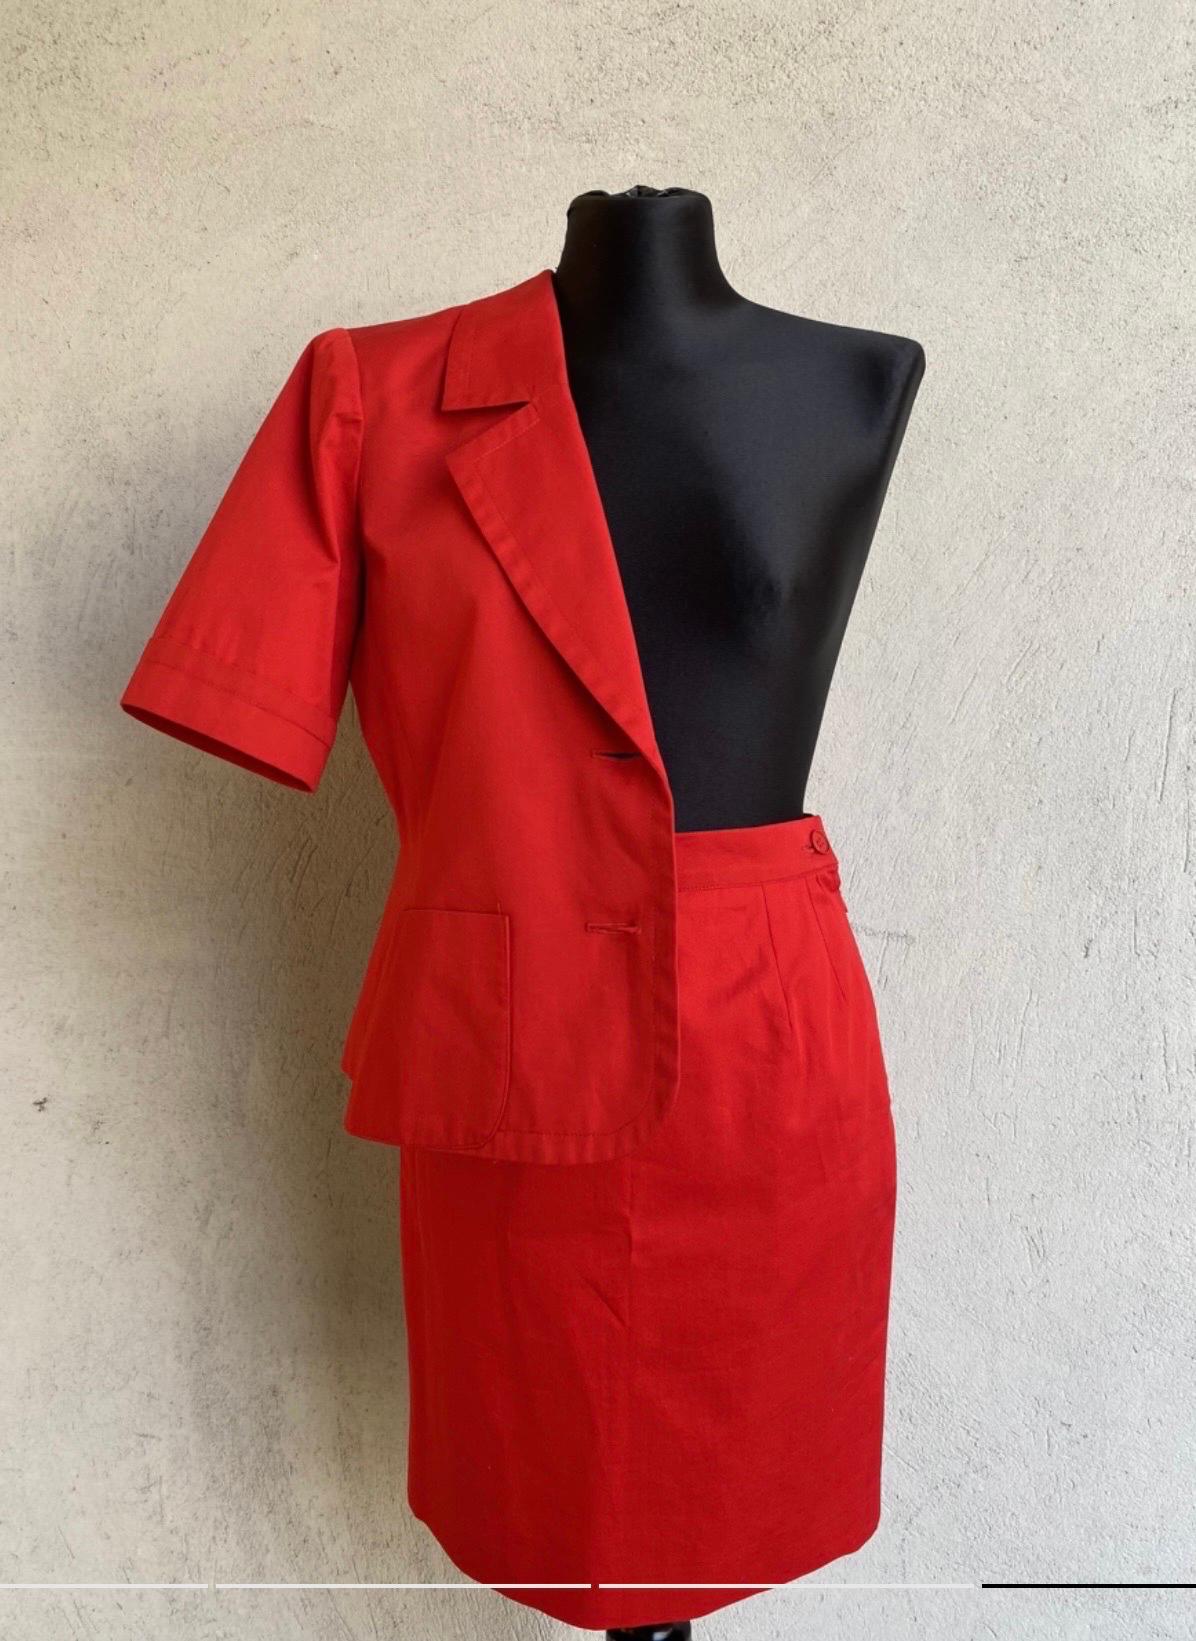 Women's or Men's Yves Saint Laurent Vintage red Suit For Sale